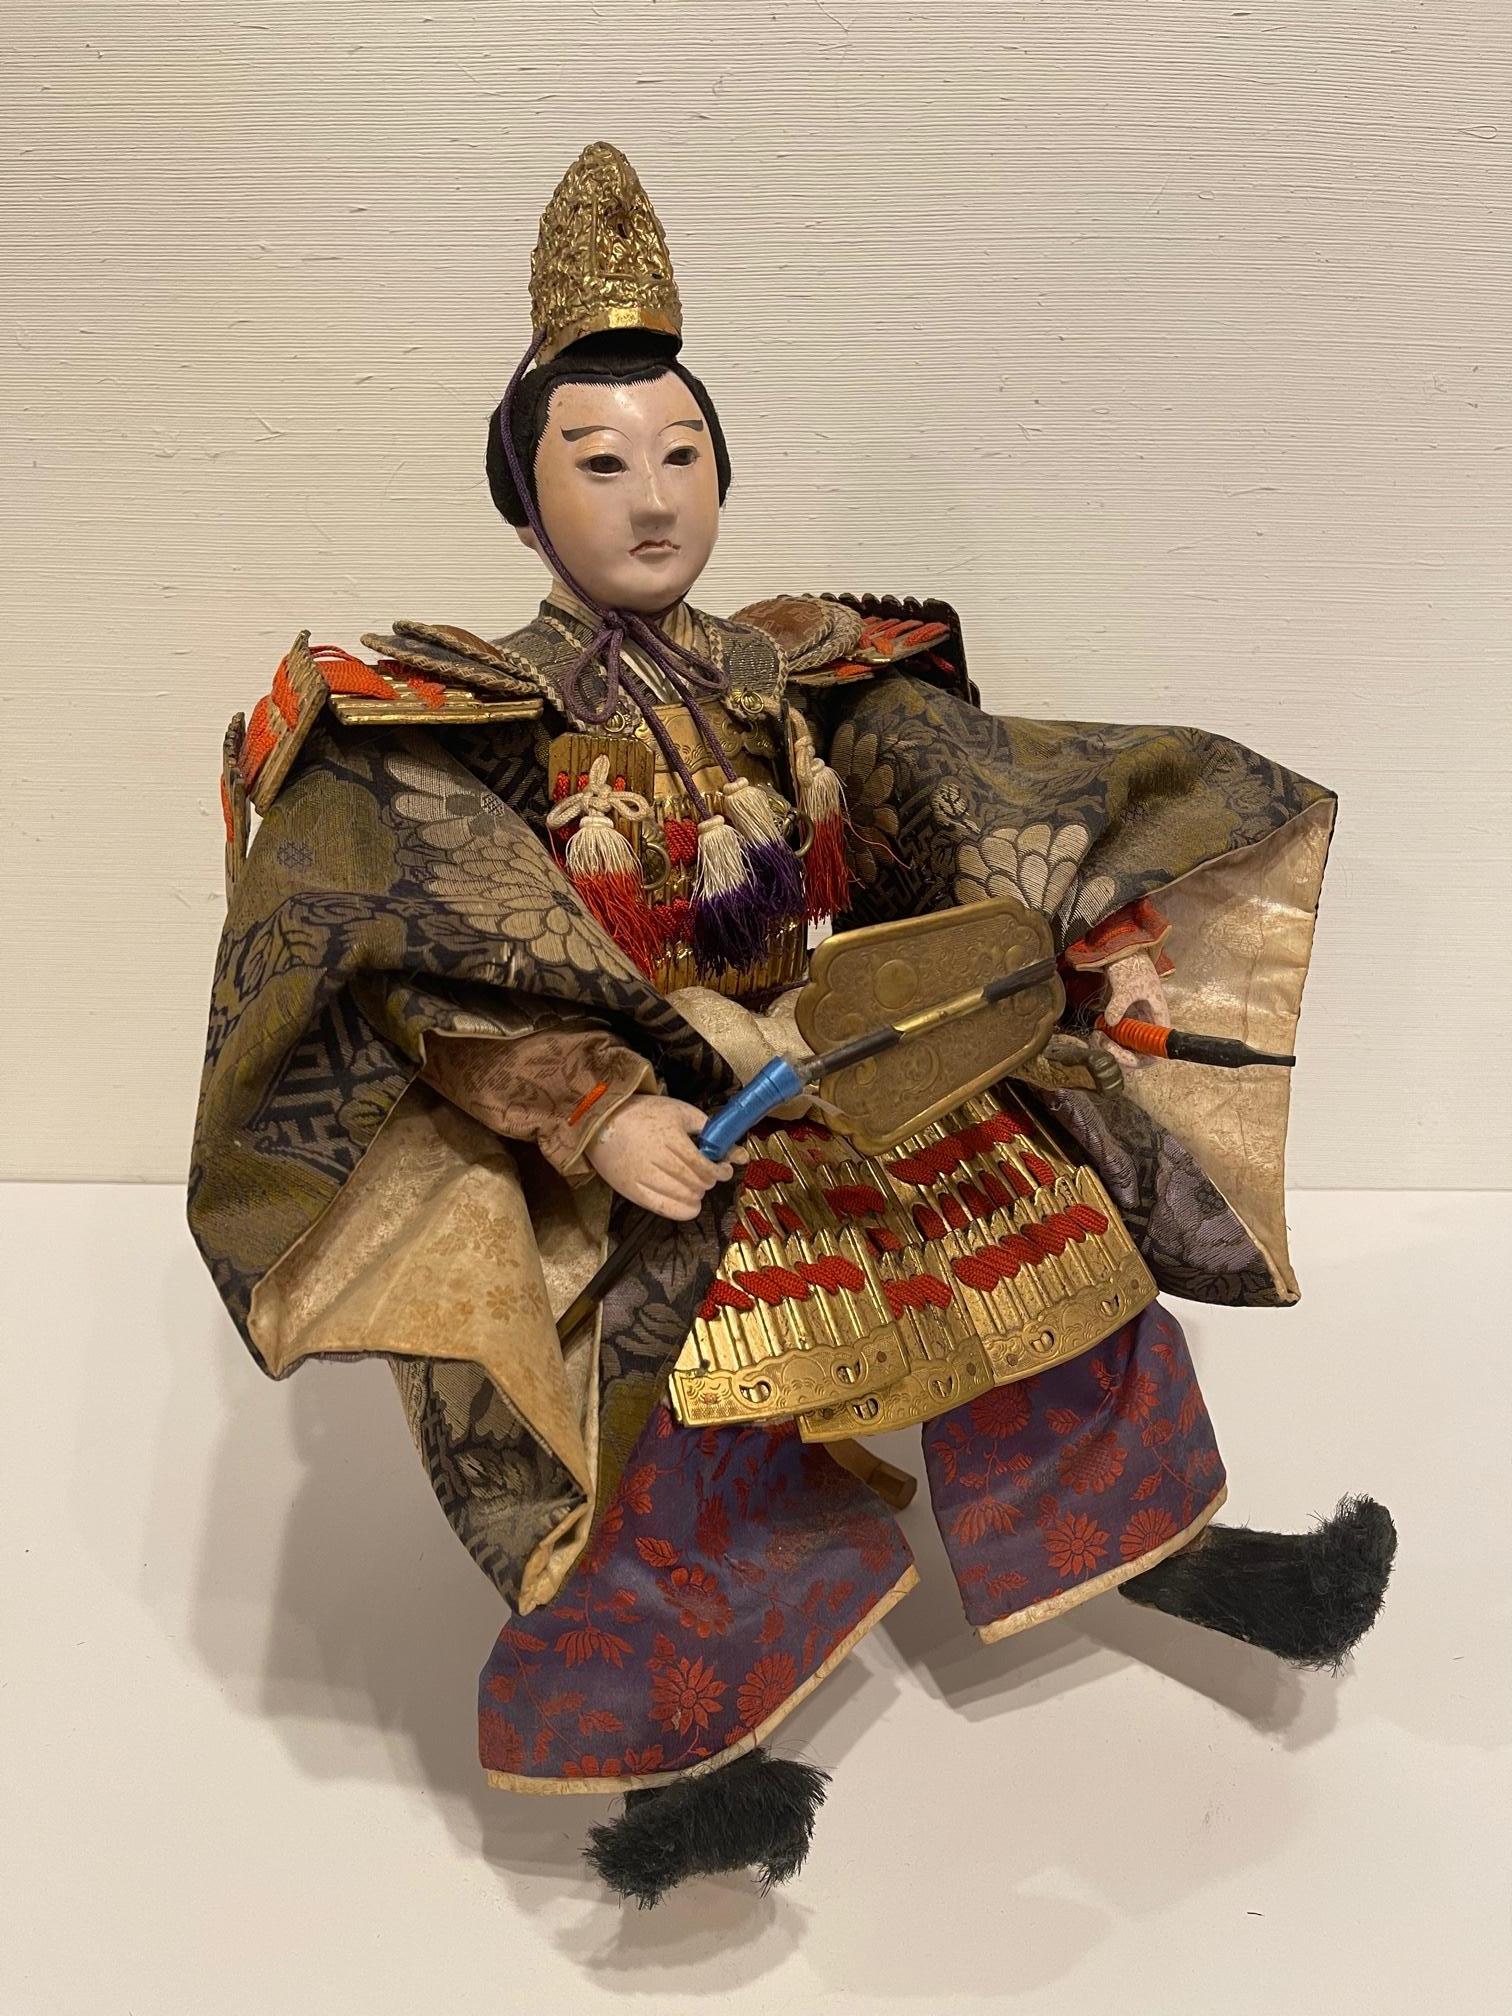 Japanische Samurai-Puppe oder -Figur, Meiji-Zeit, um 1830. Rock lila und roten Farben.
 